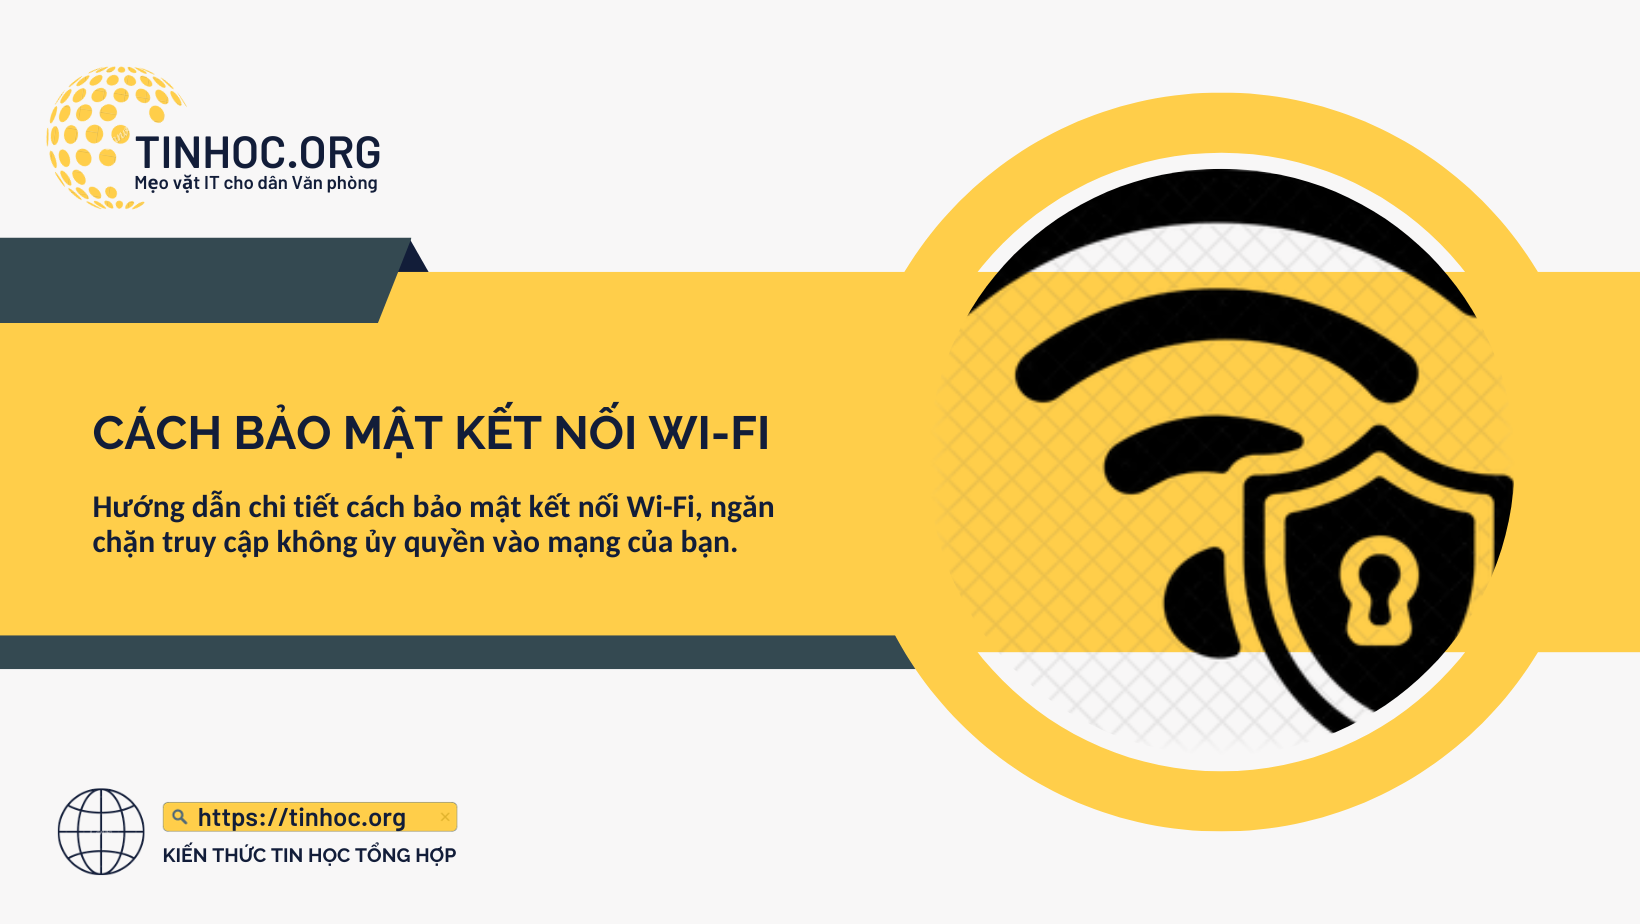 Bằng cách thực hiện các biện pháp bảo mật đơn giản, bạn có thể giúp bảo vệ mạng Wi-Fi của mình khỏi những kẻ xâm nhập.